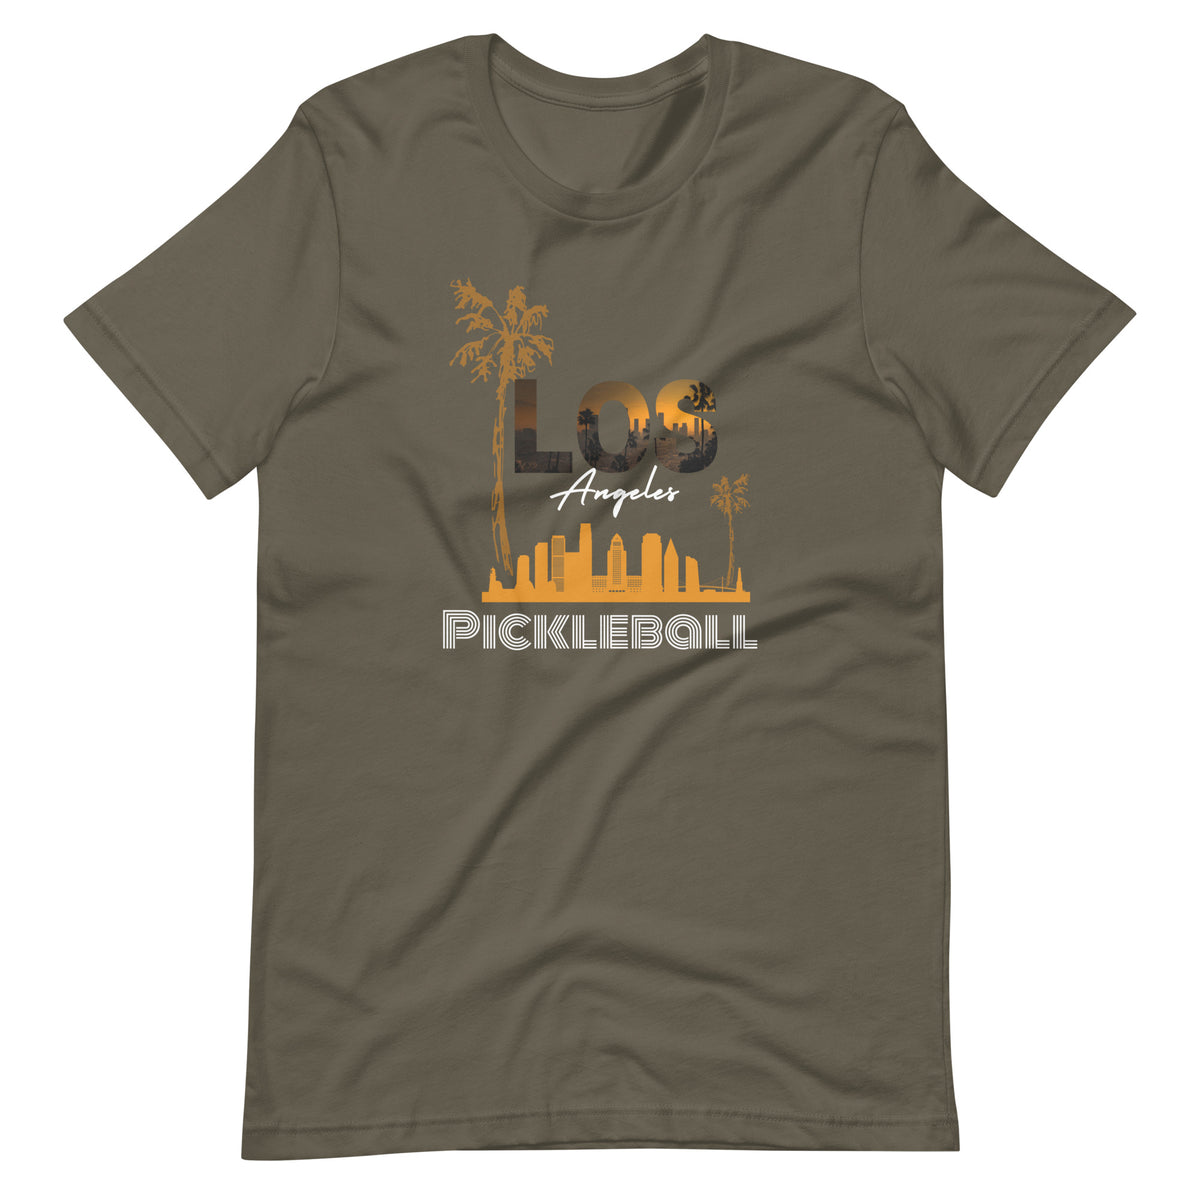 Los Angeles Pickleball T-shirt